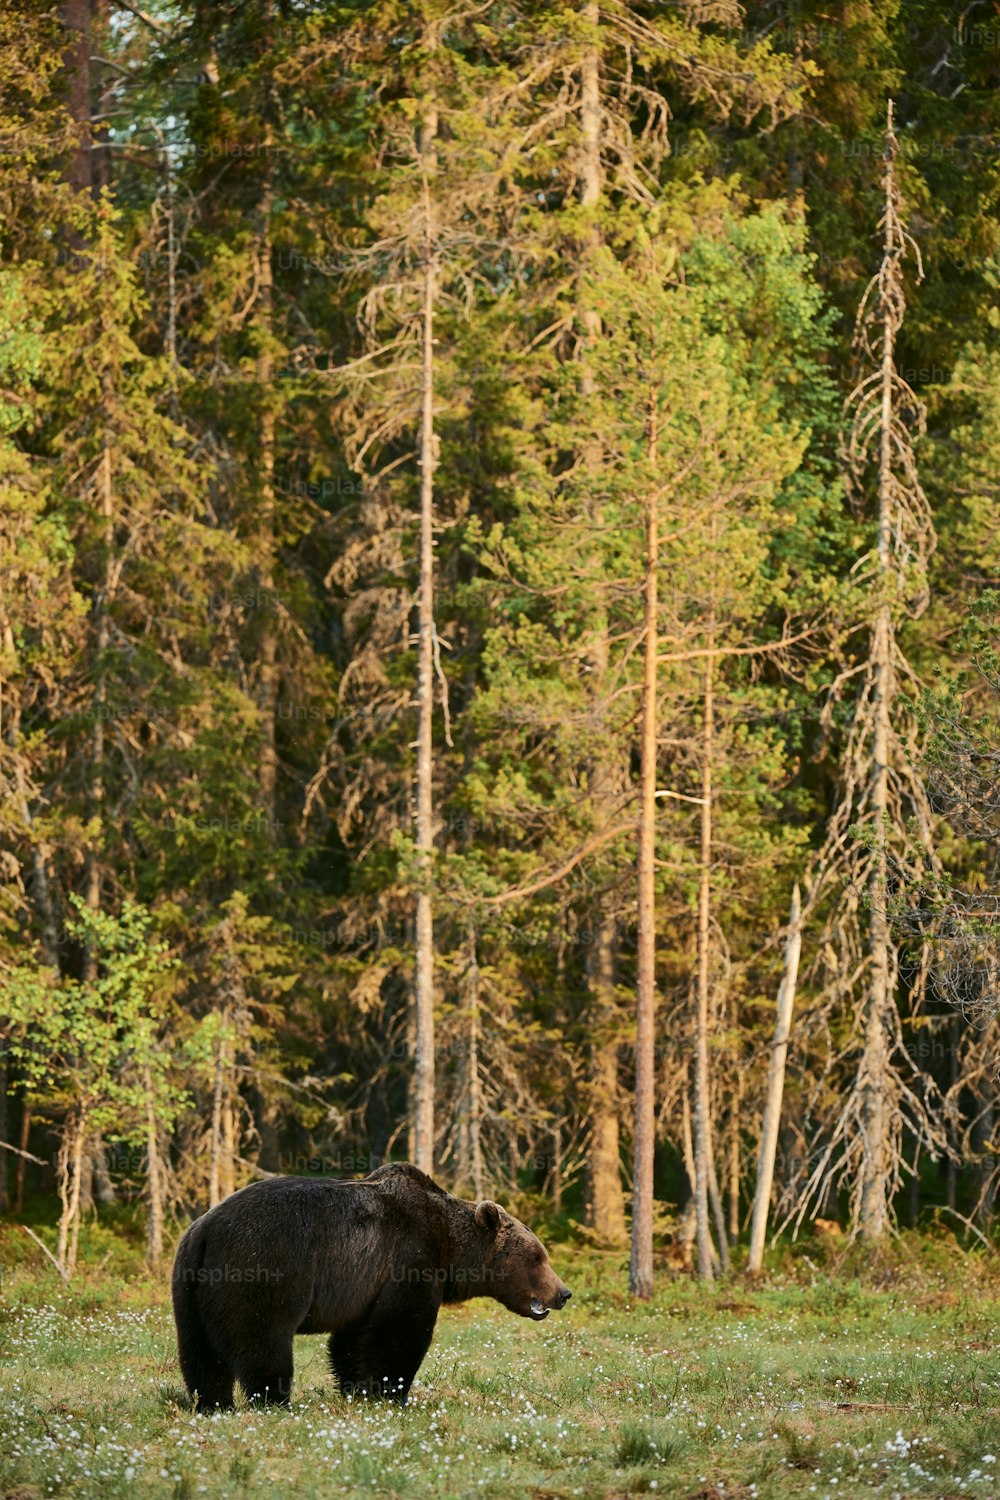 夜明けに緑のフィンランドのタイガを歩く野生のヒグマ(Ursus arctos)